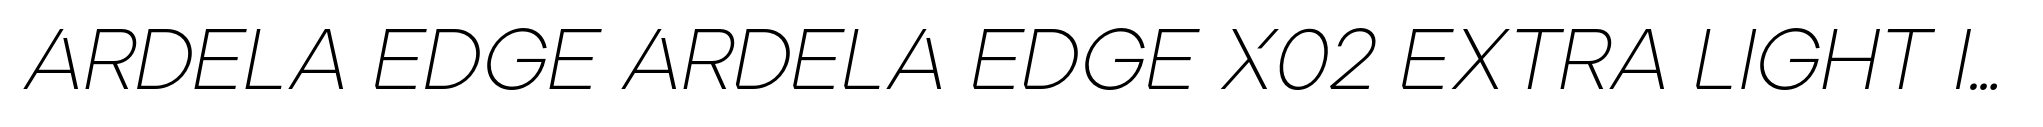 Ardela Edge ARDELA EDGE X02 Extra Light Italic image